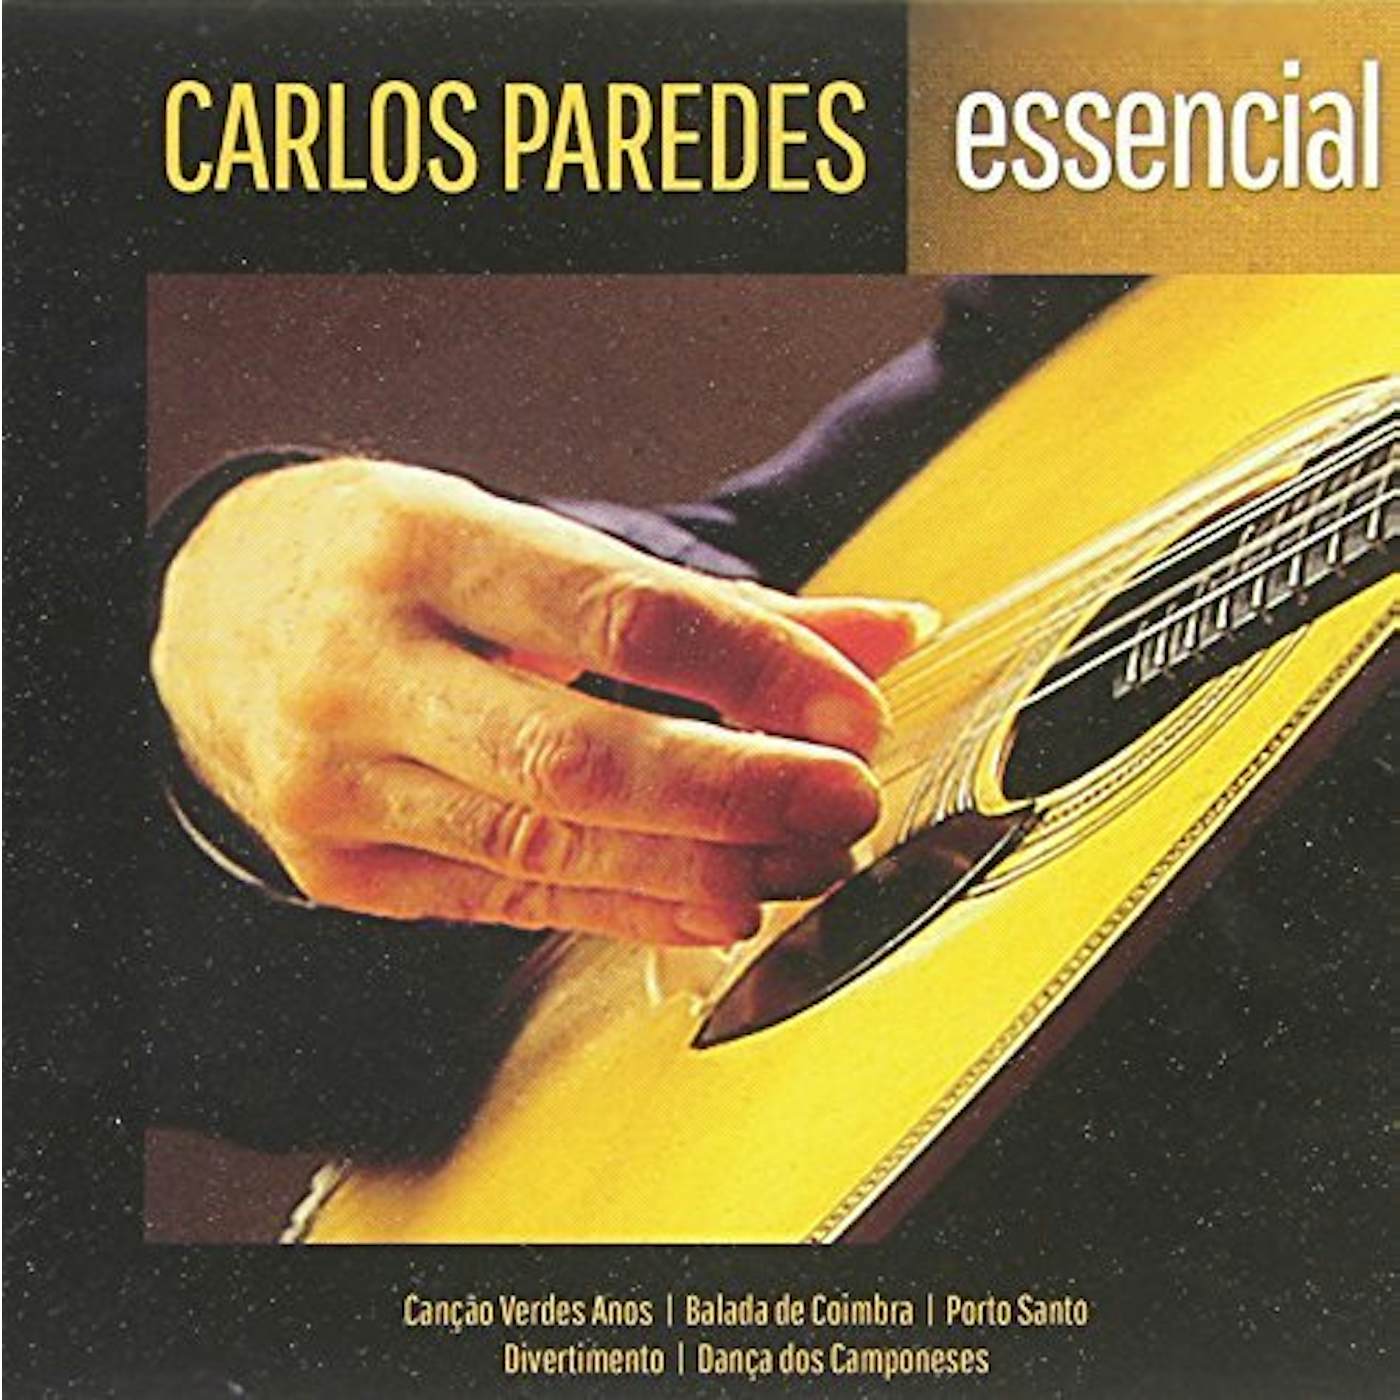 Carlos Paredes ESSENCIAL CD